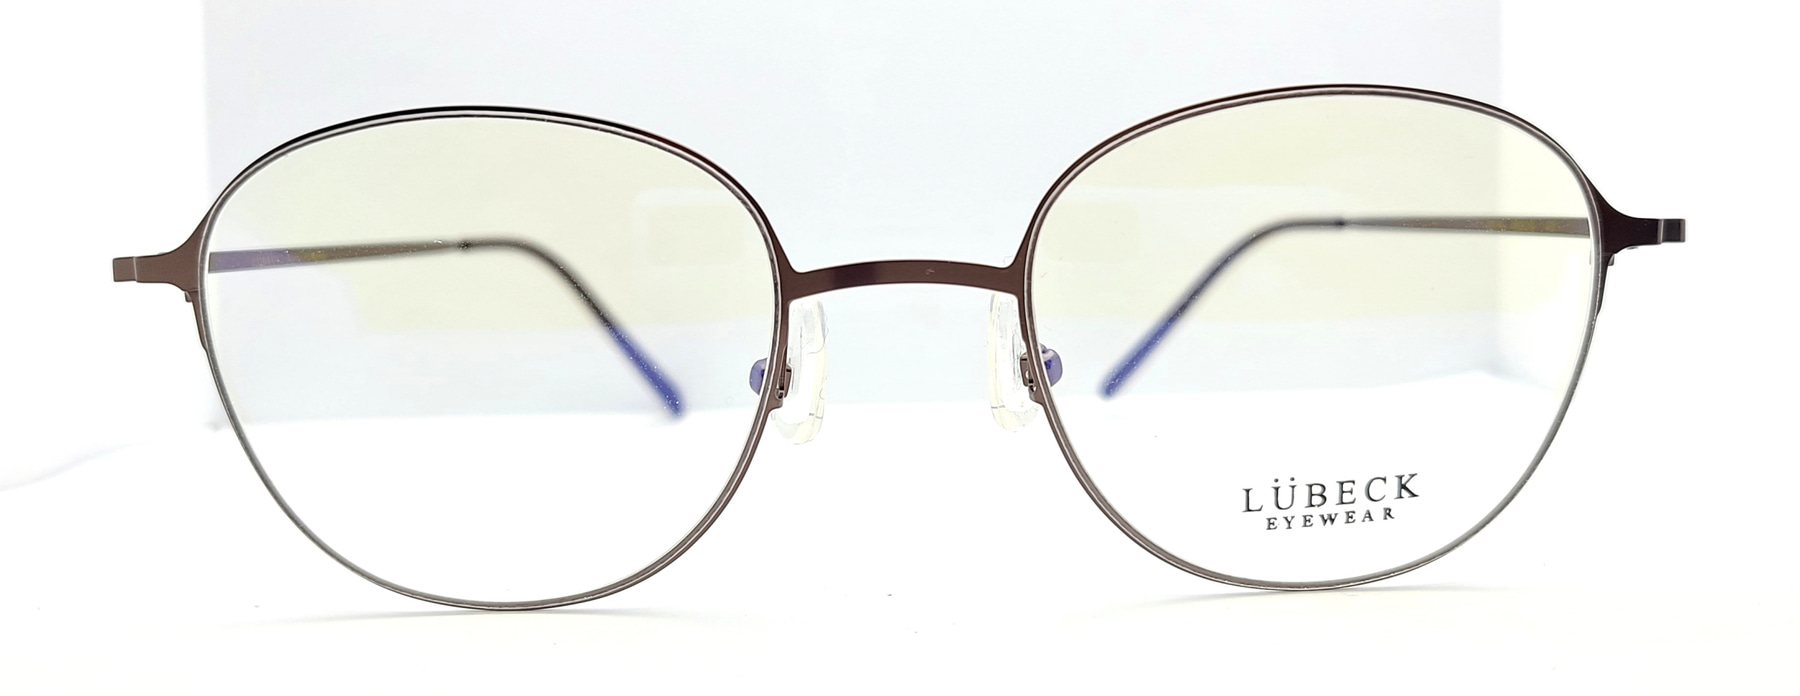 LUBECK 2015, Korean glasses, sunglasses, eyeglasses, glasses